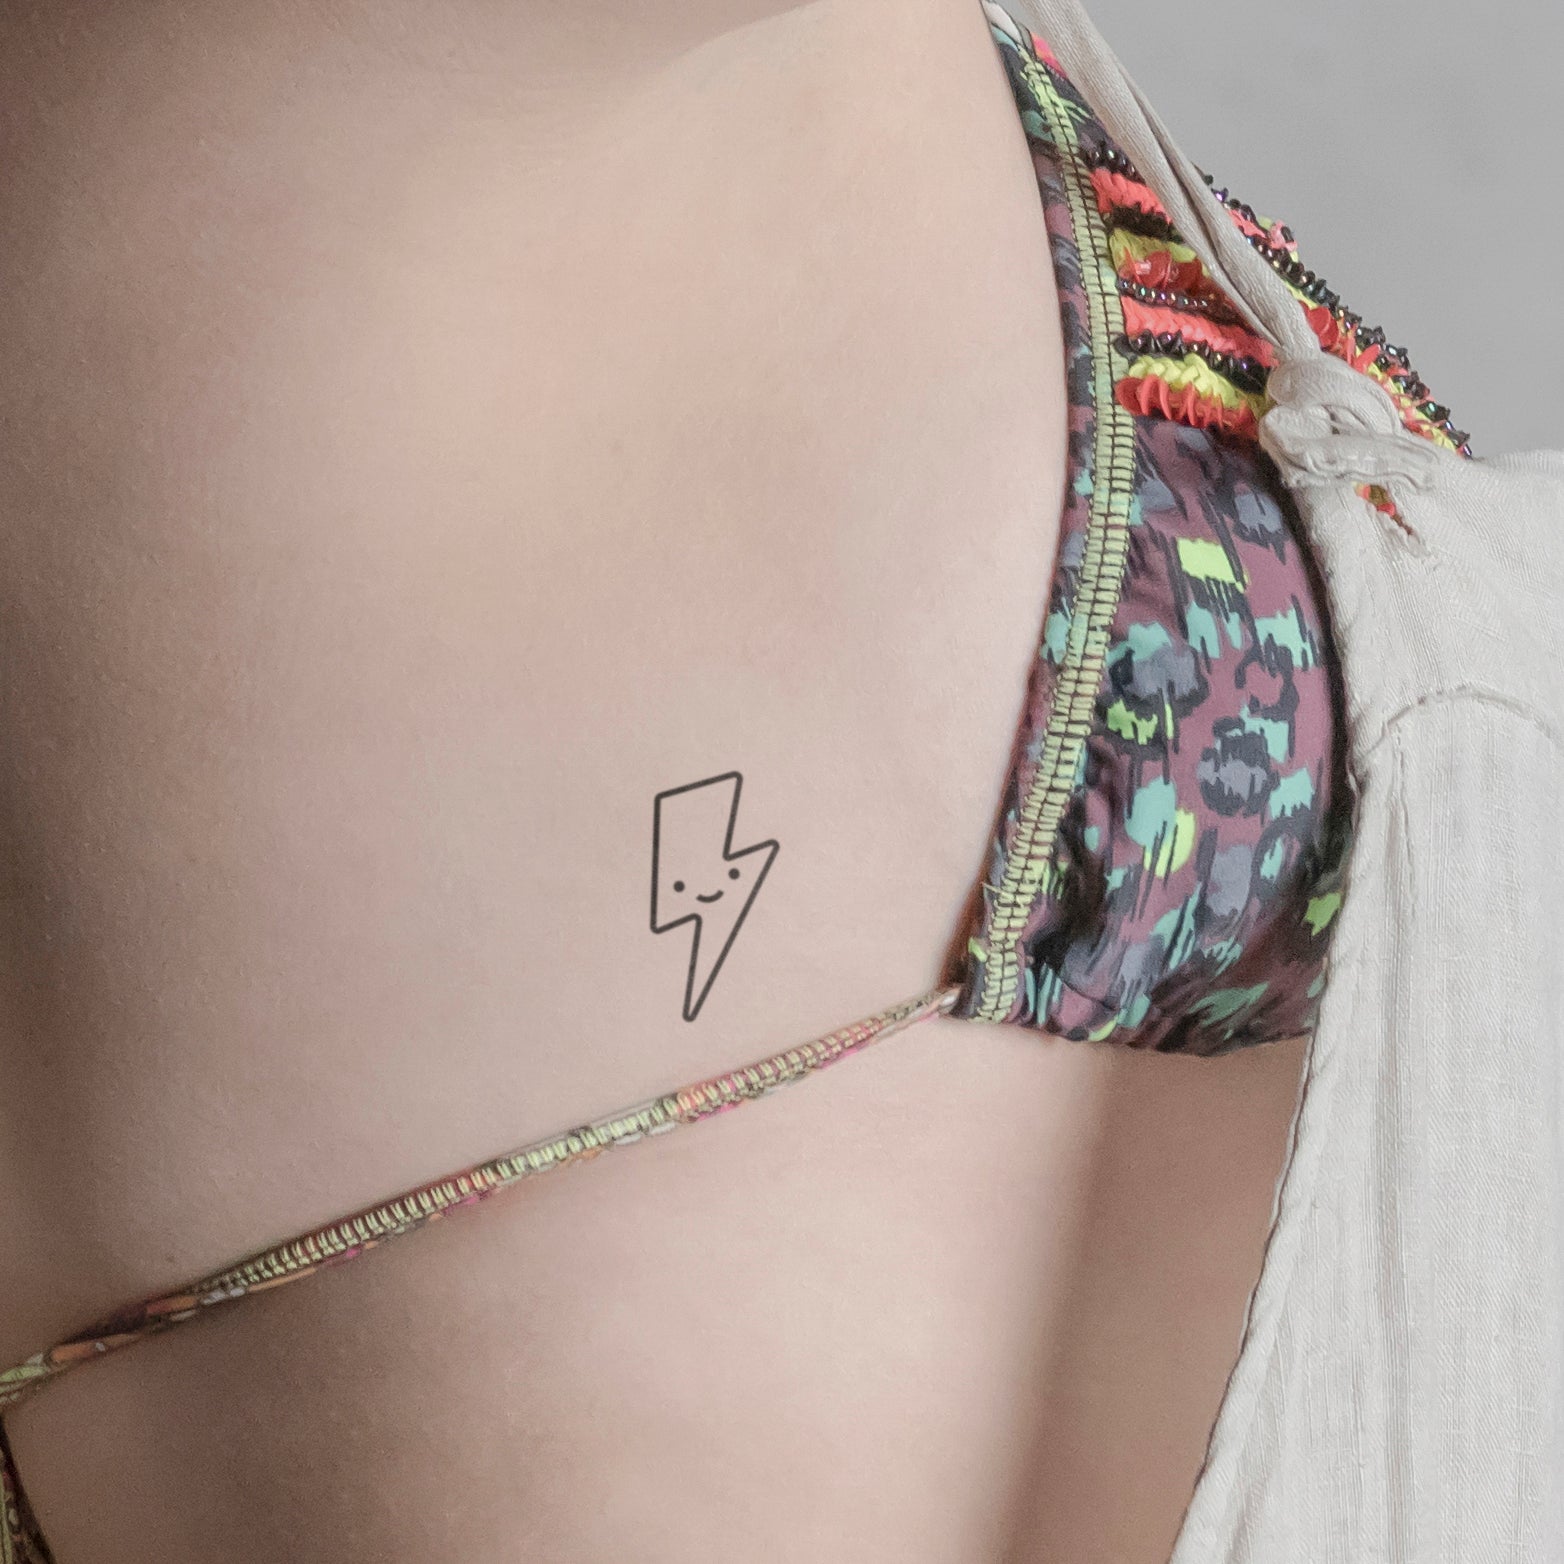 Lächelnder Blitz Tattoo von minink, der Marke für temporäre Tattoos.